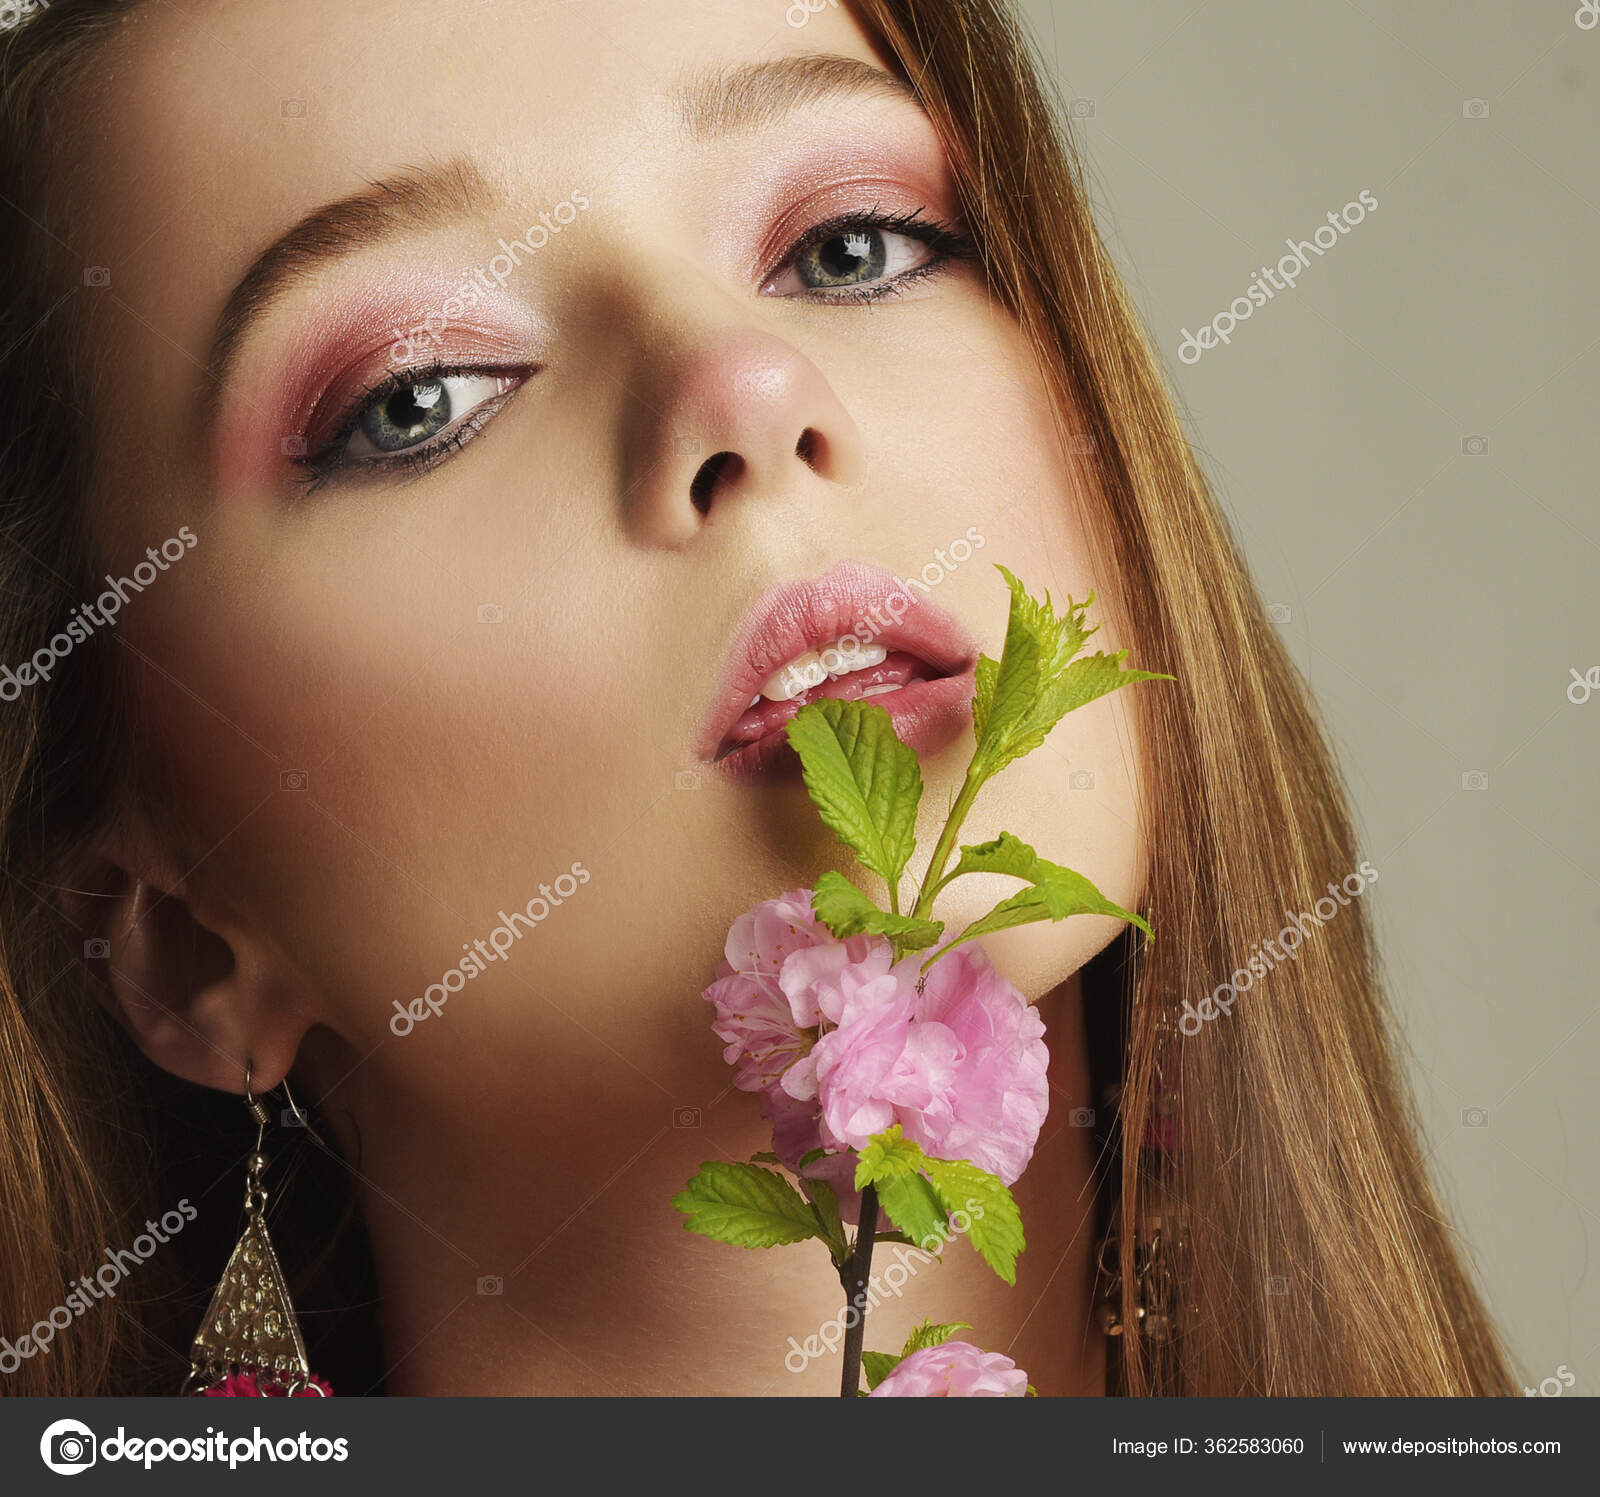 Bonita joia para o nariz com brilhantes que formam uma flor